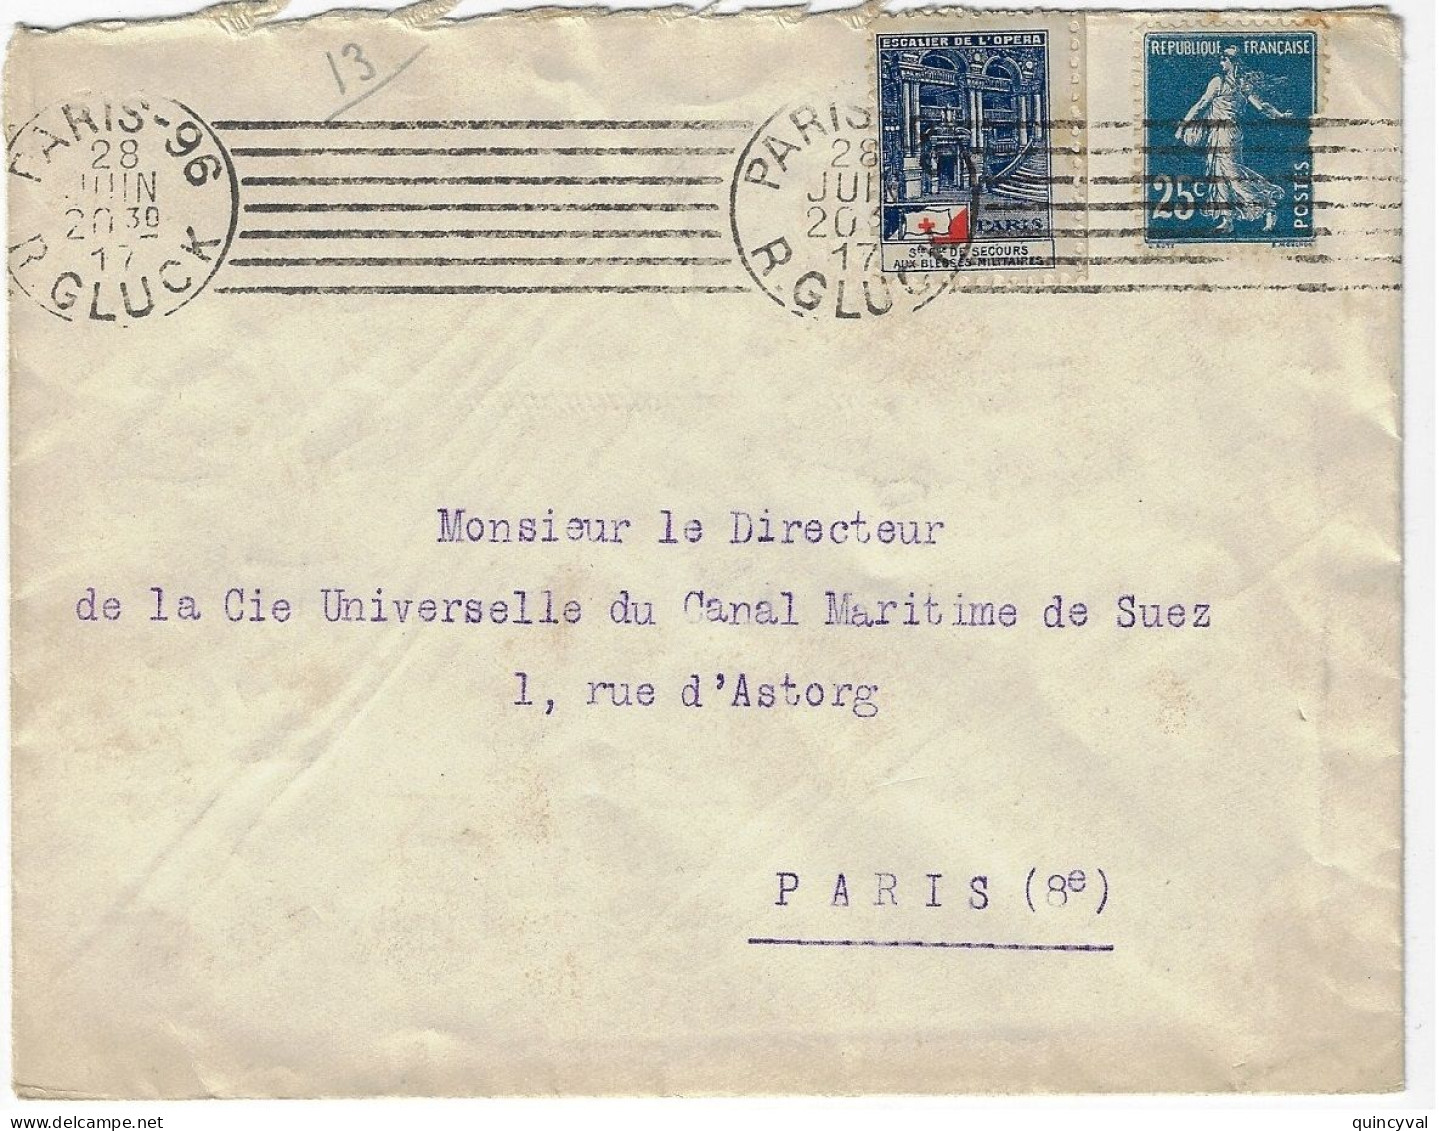 PARIS-96 R Gluck Lettre 25c Semeuse Yv 140 Ob Meca Krag 7 Lignes Inégales 1917 Etiquette Opéra Aide Secours - Lettres & Documents